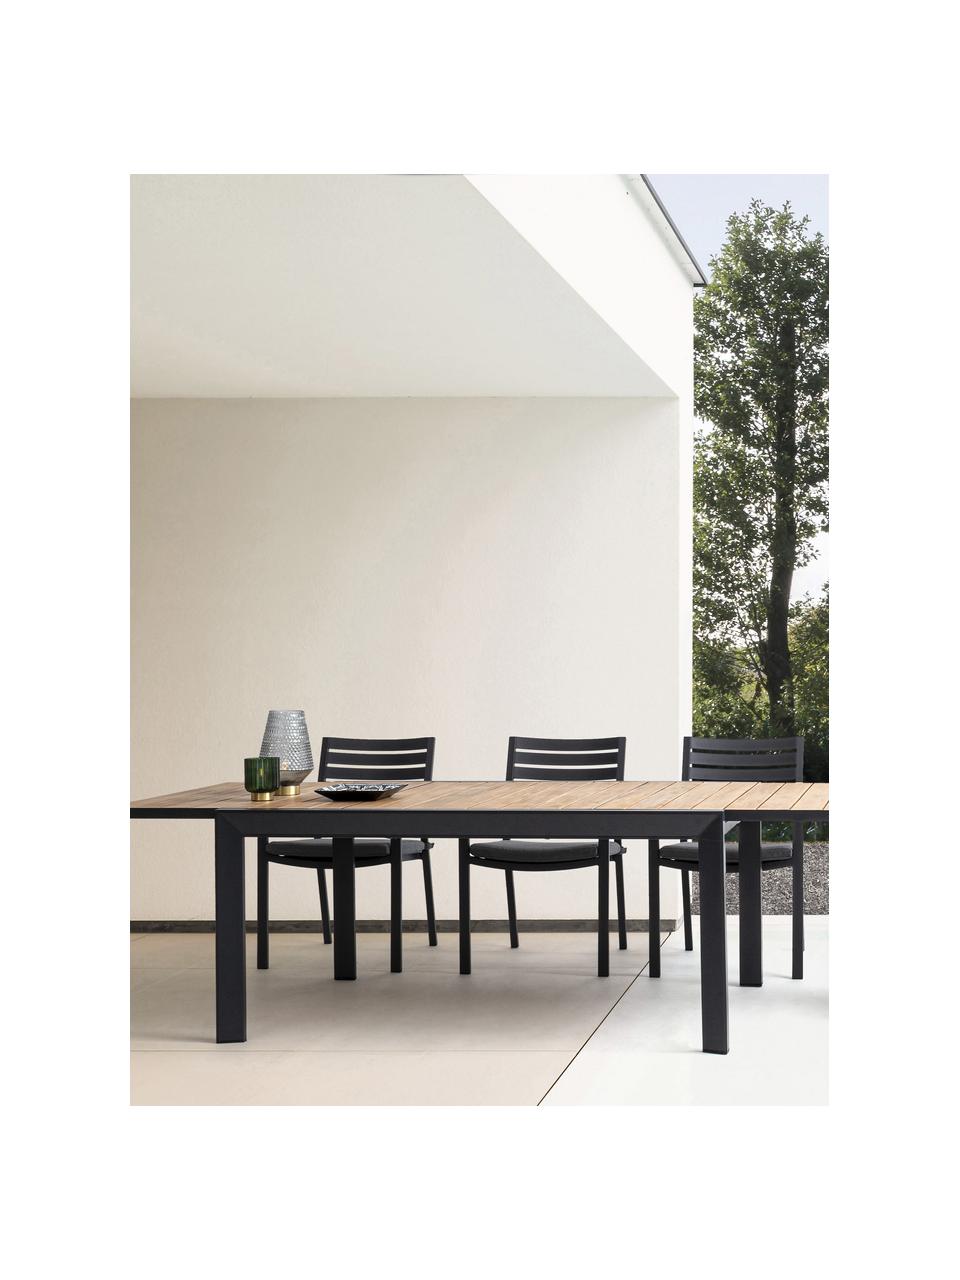 Rozkladací záhradný jedálenský stôl Belmar, 220 - 340 x 100 cm, Hliník, práškový náter, Antracitová, vzhľad dreva, Š 220 do 340 x H 100 cm